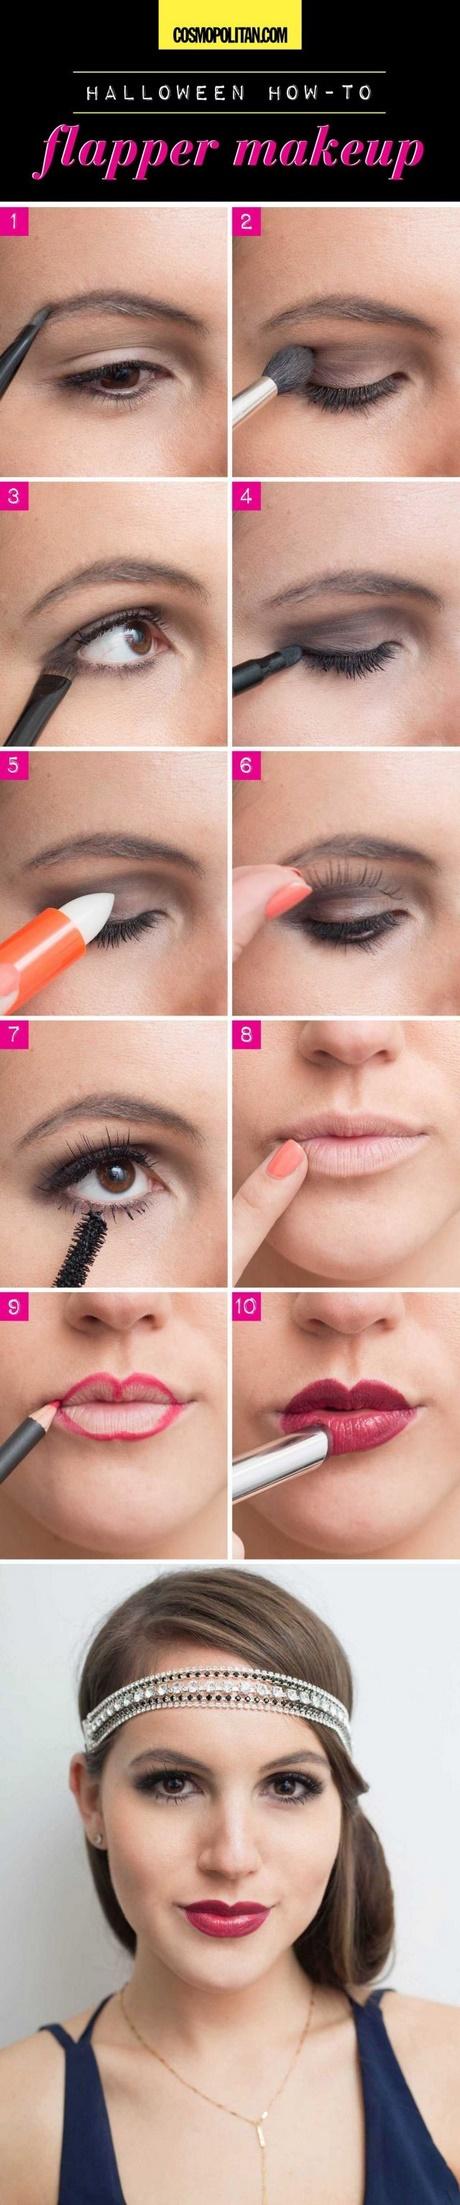 1920s-makeup-tutorials-03_2 Twintiger jaren make-up tutorials